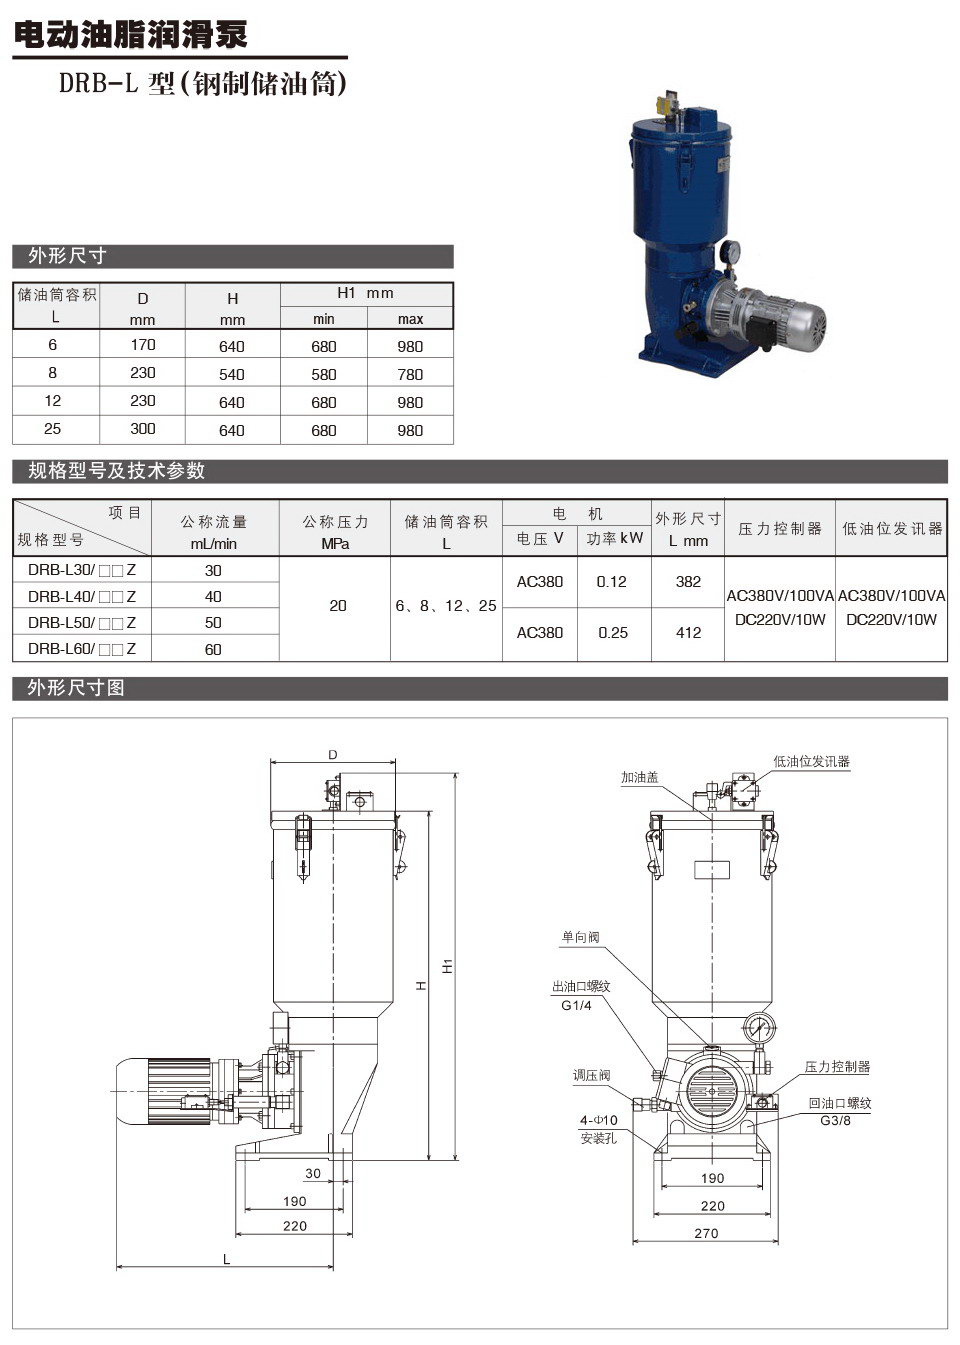 电动油脂润滑泵DRB-L型钢制储油筒参数.jpg